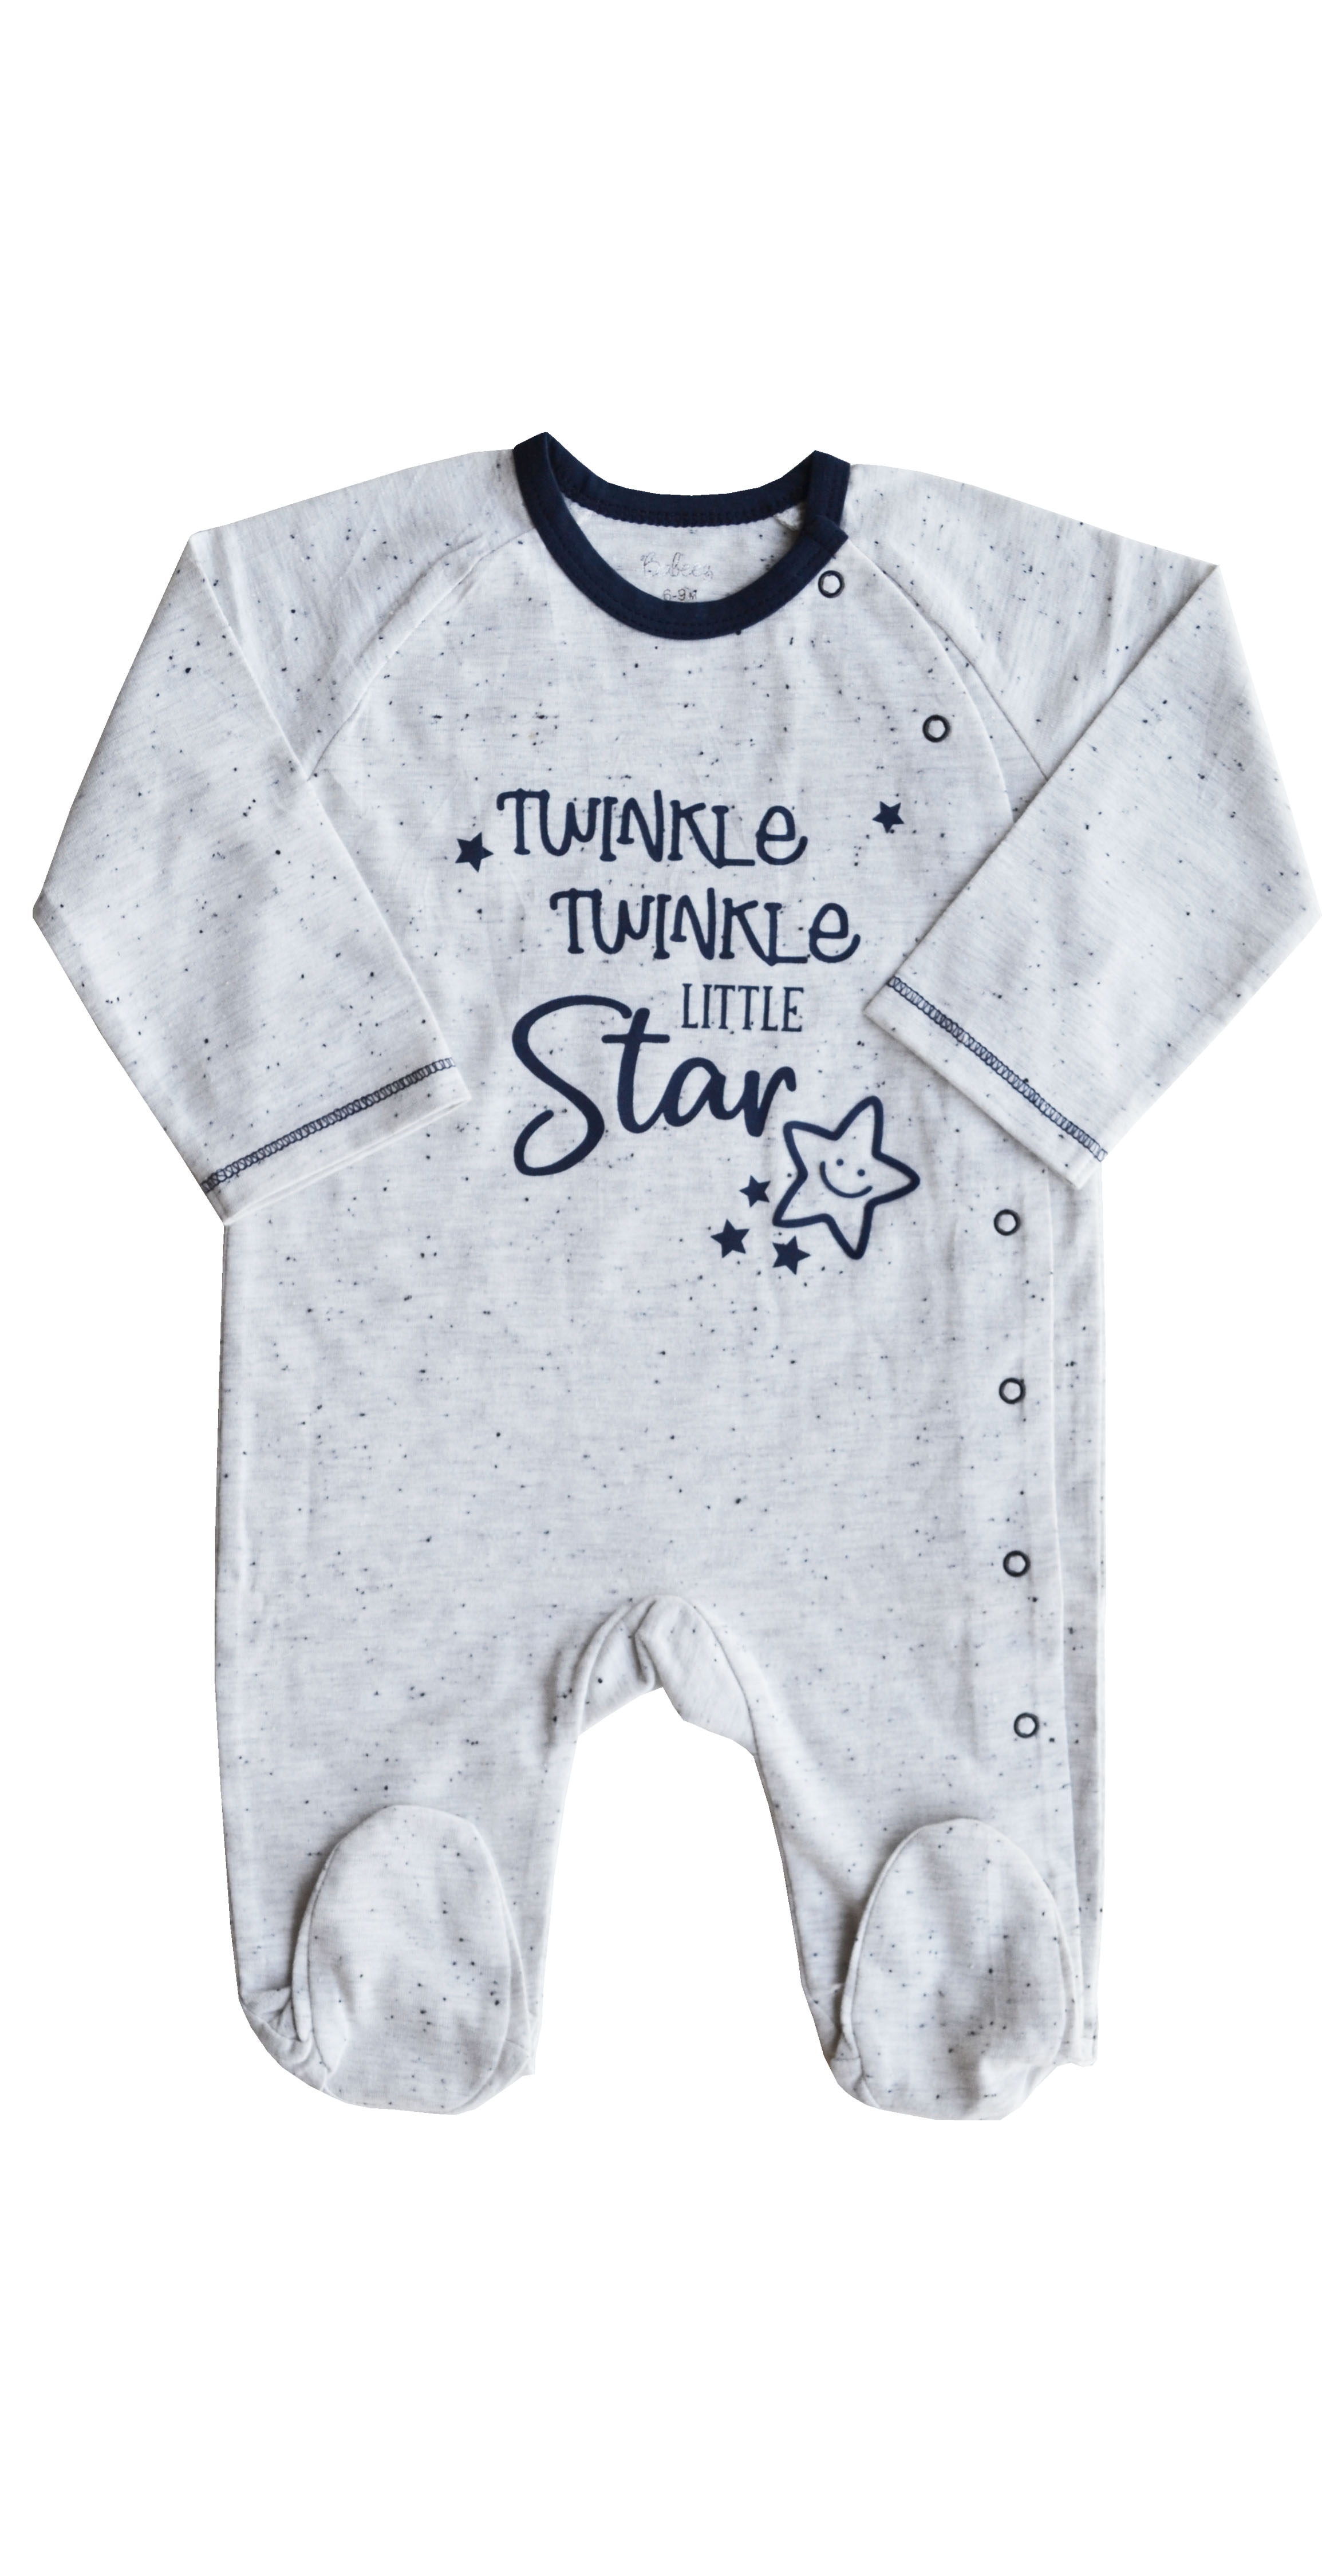 Twinkle Twinkle Little Star Print on Ecru Melange Full Sleeper with Feet (100% Cotton Single Jersey)